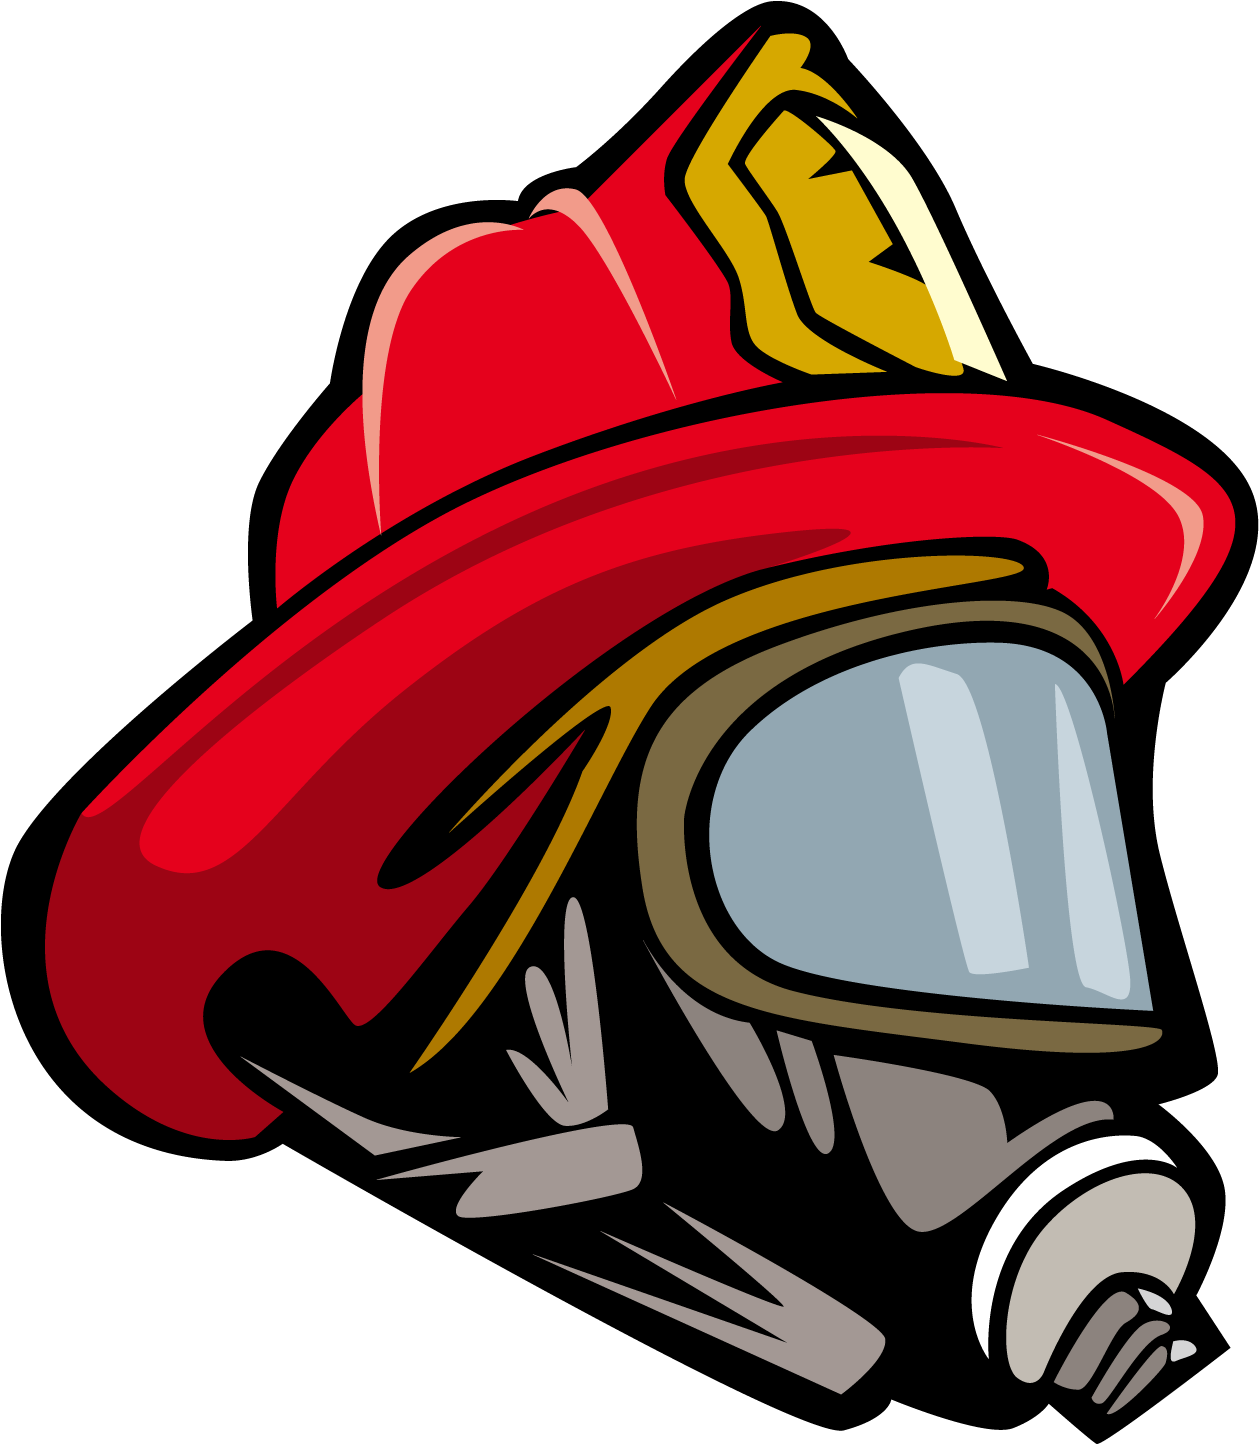 A Cartoon Of A Firefighter's Helmet